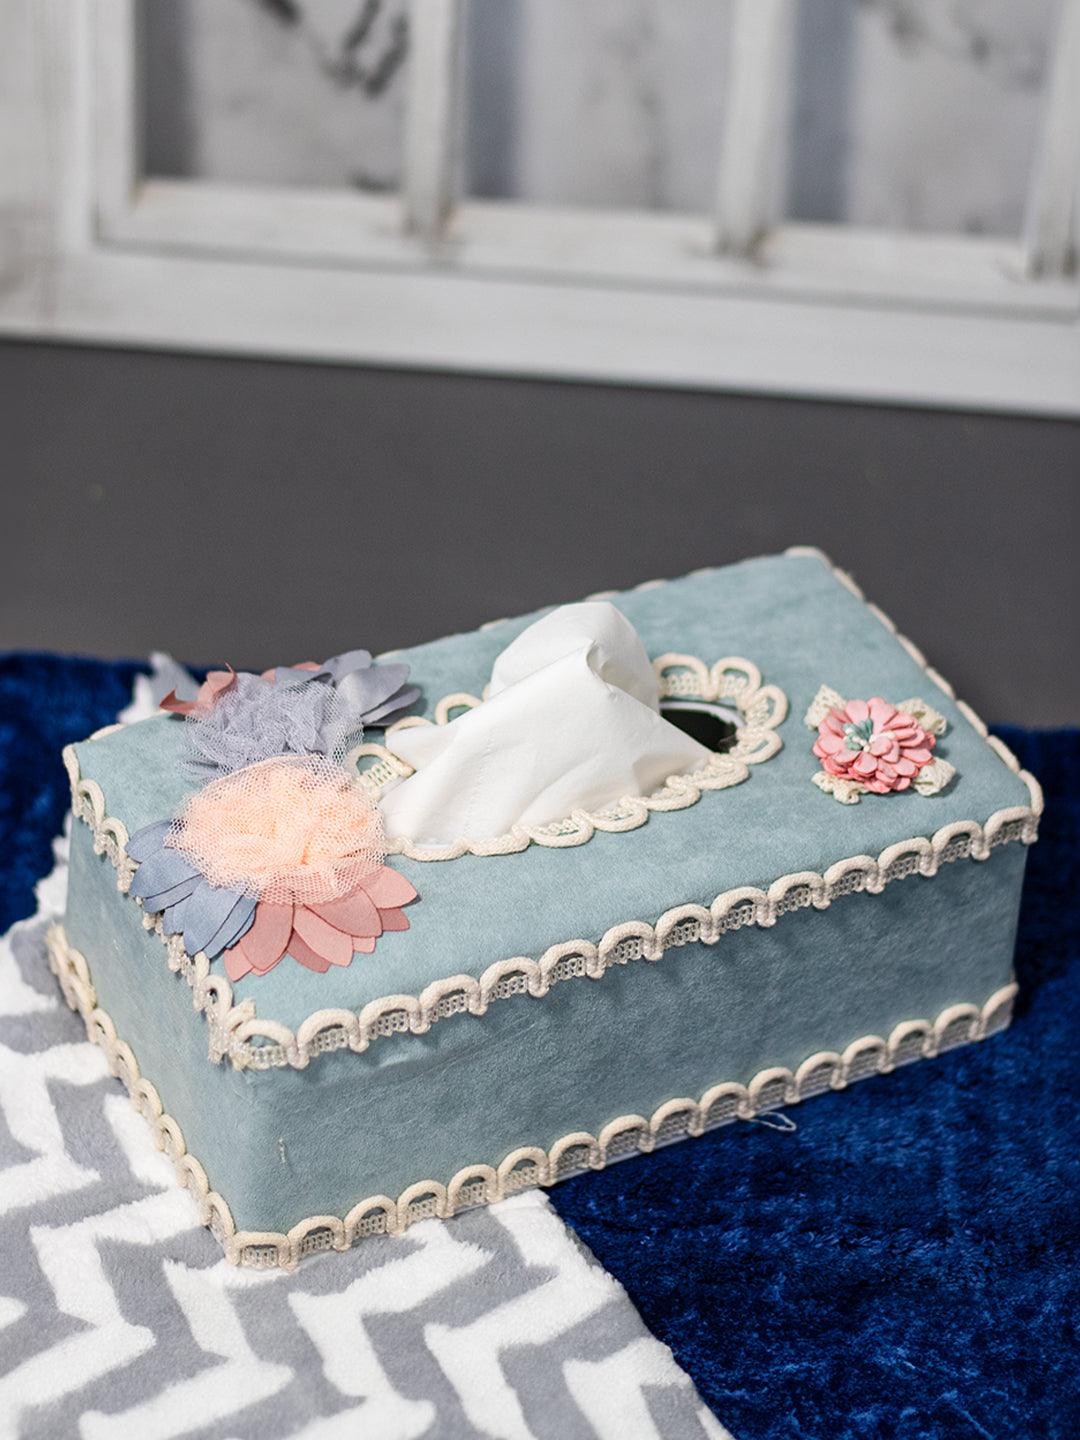 Middle Blue Tissue Box Holder - Floral Design - MARKET 99